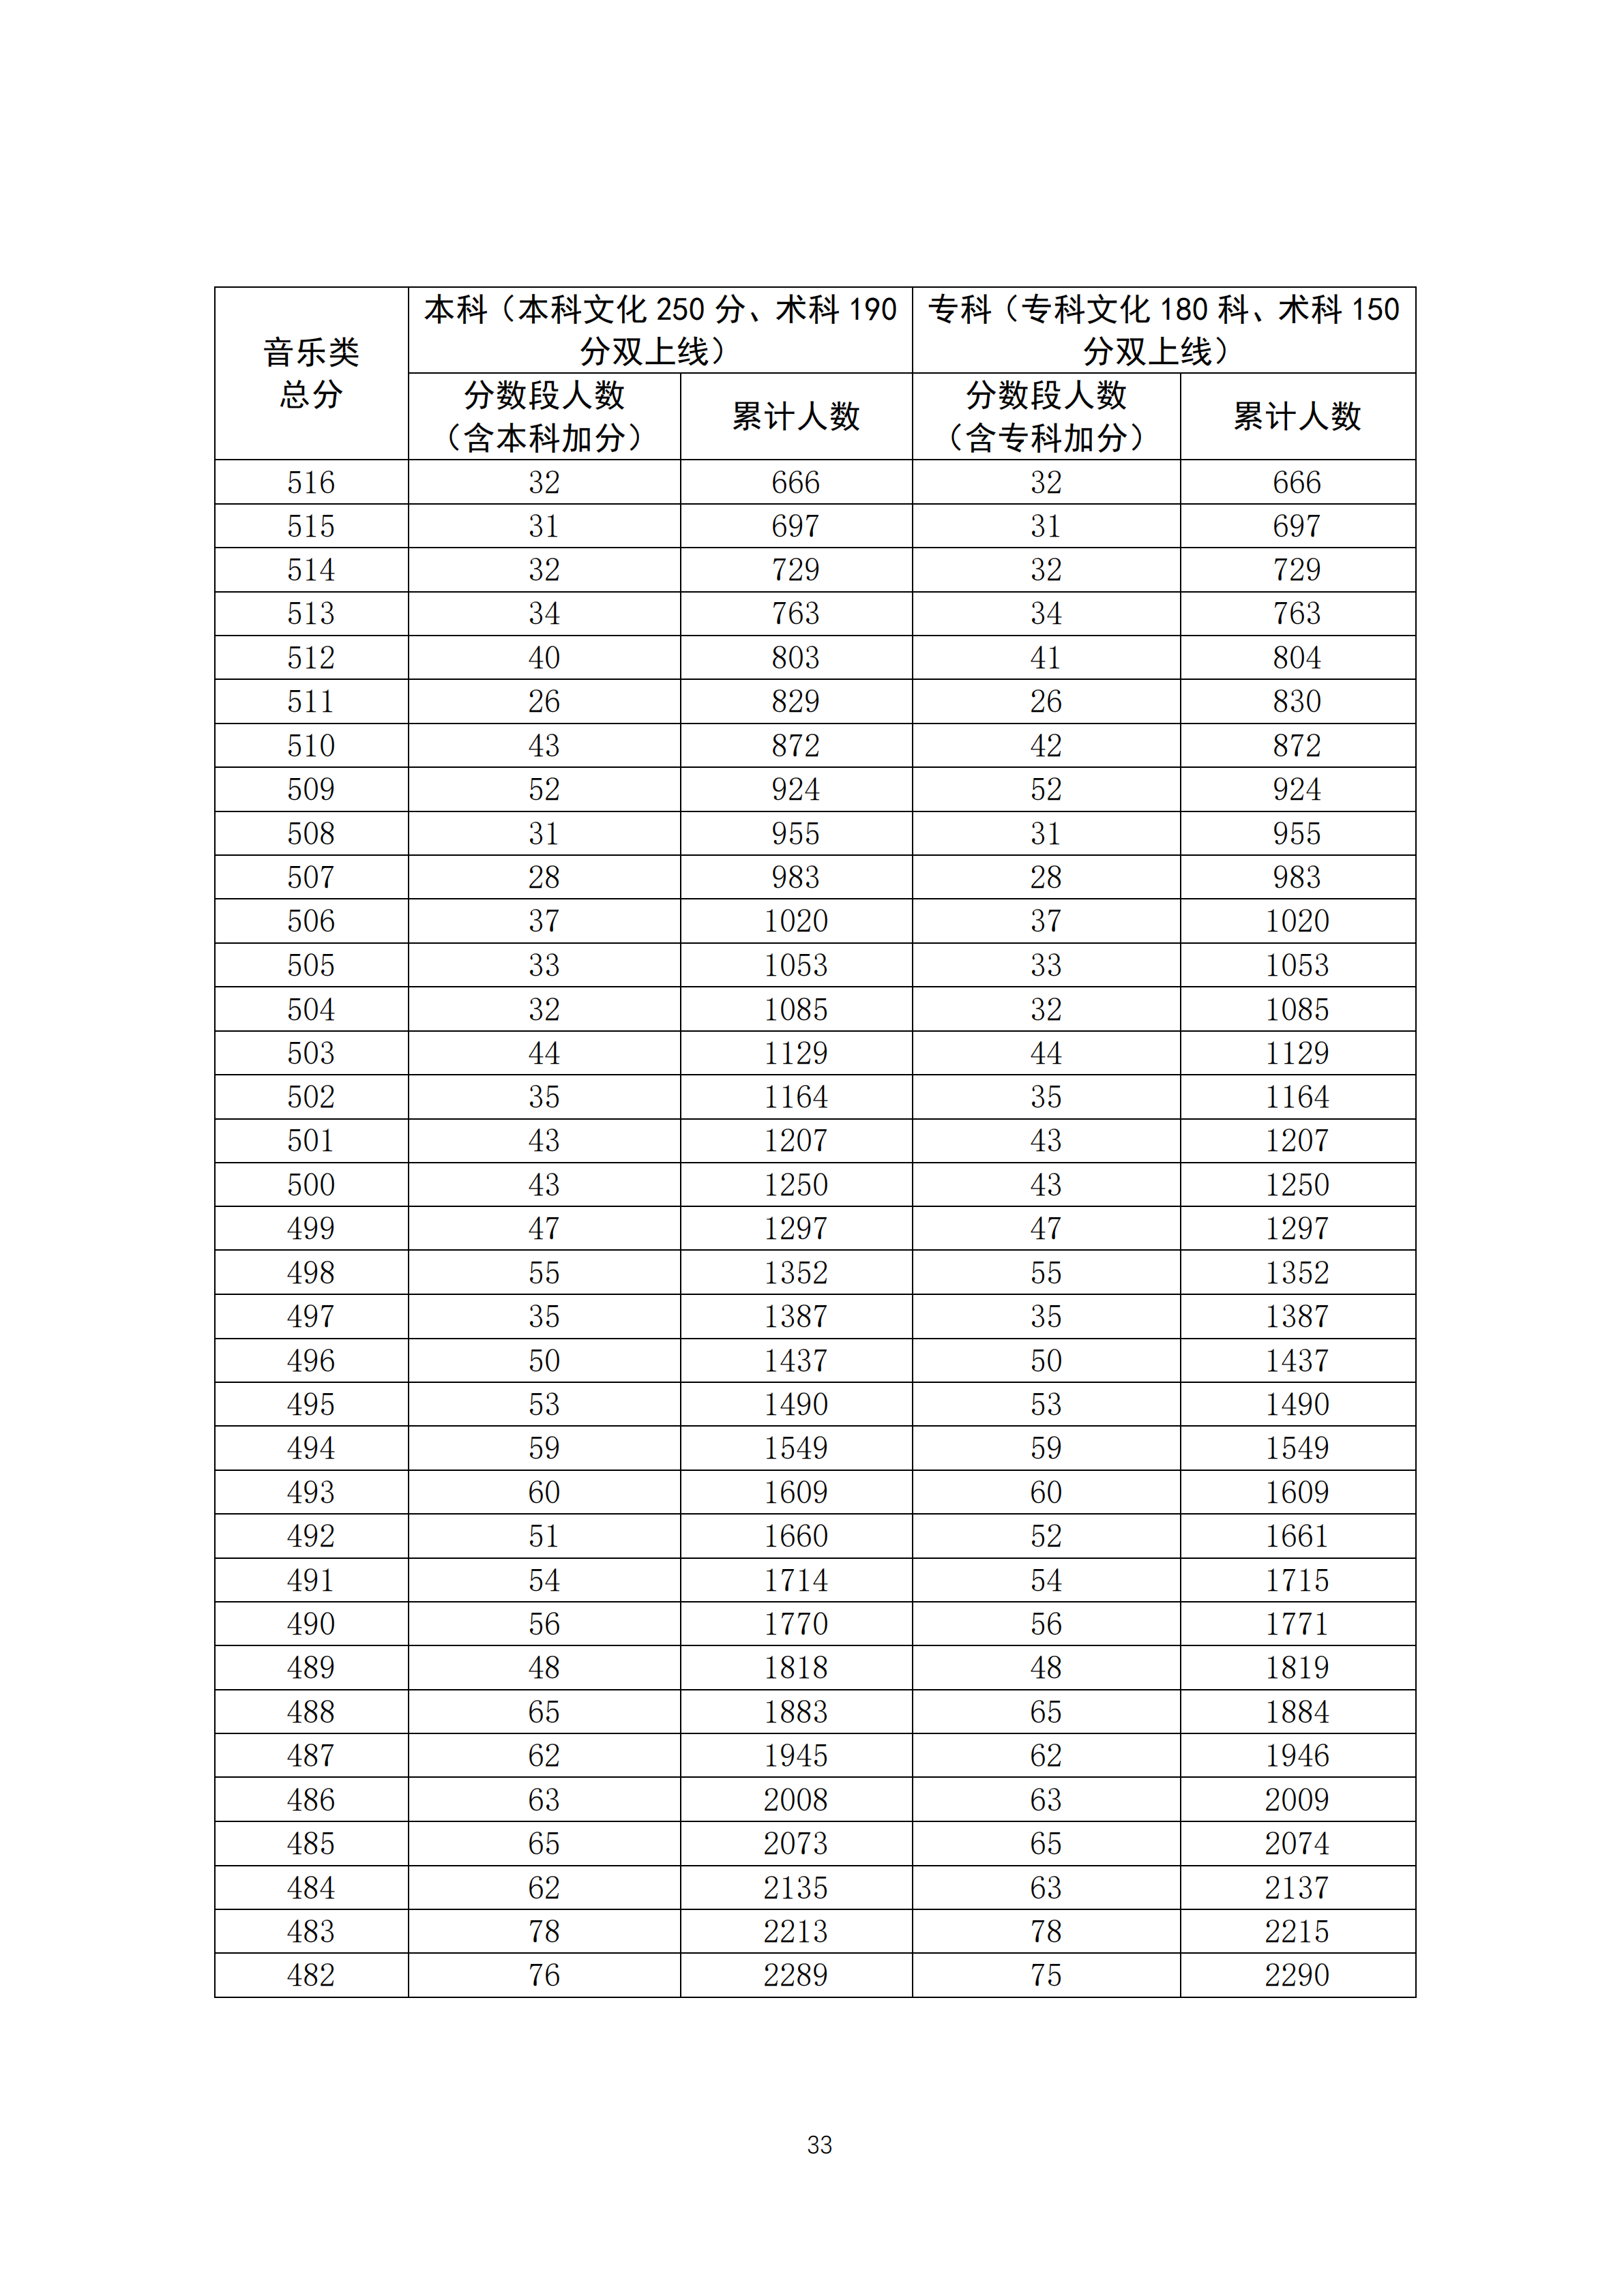 2020广东高考一分一段表 音乐类成绩排名